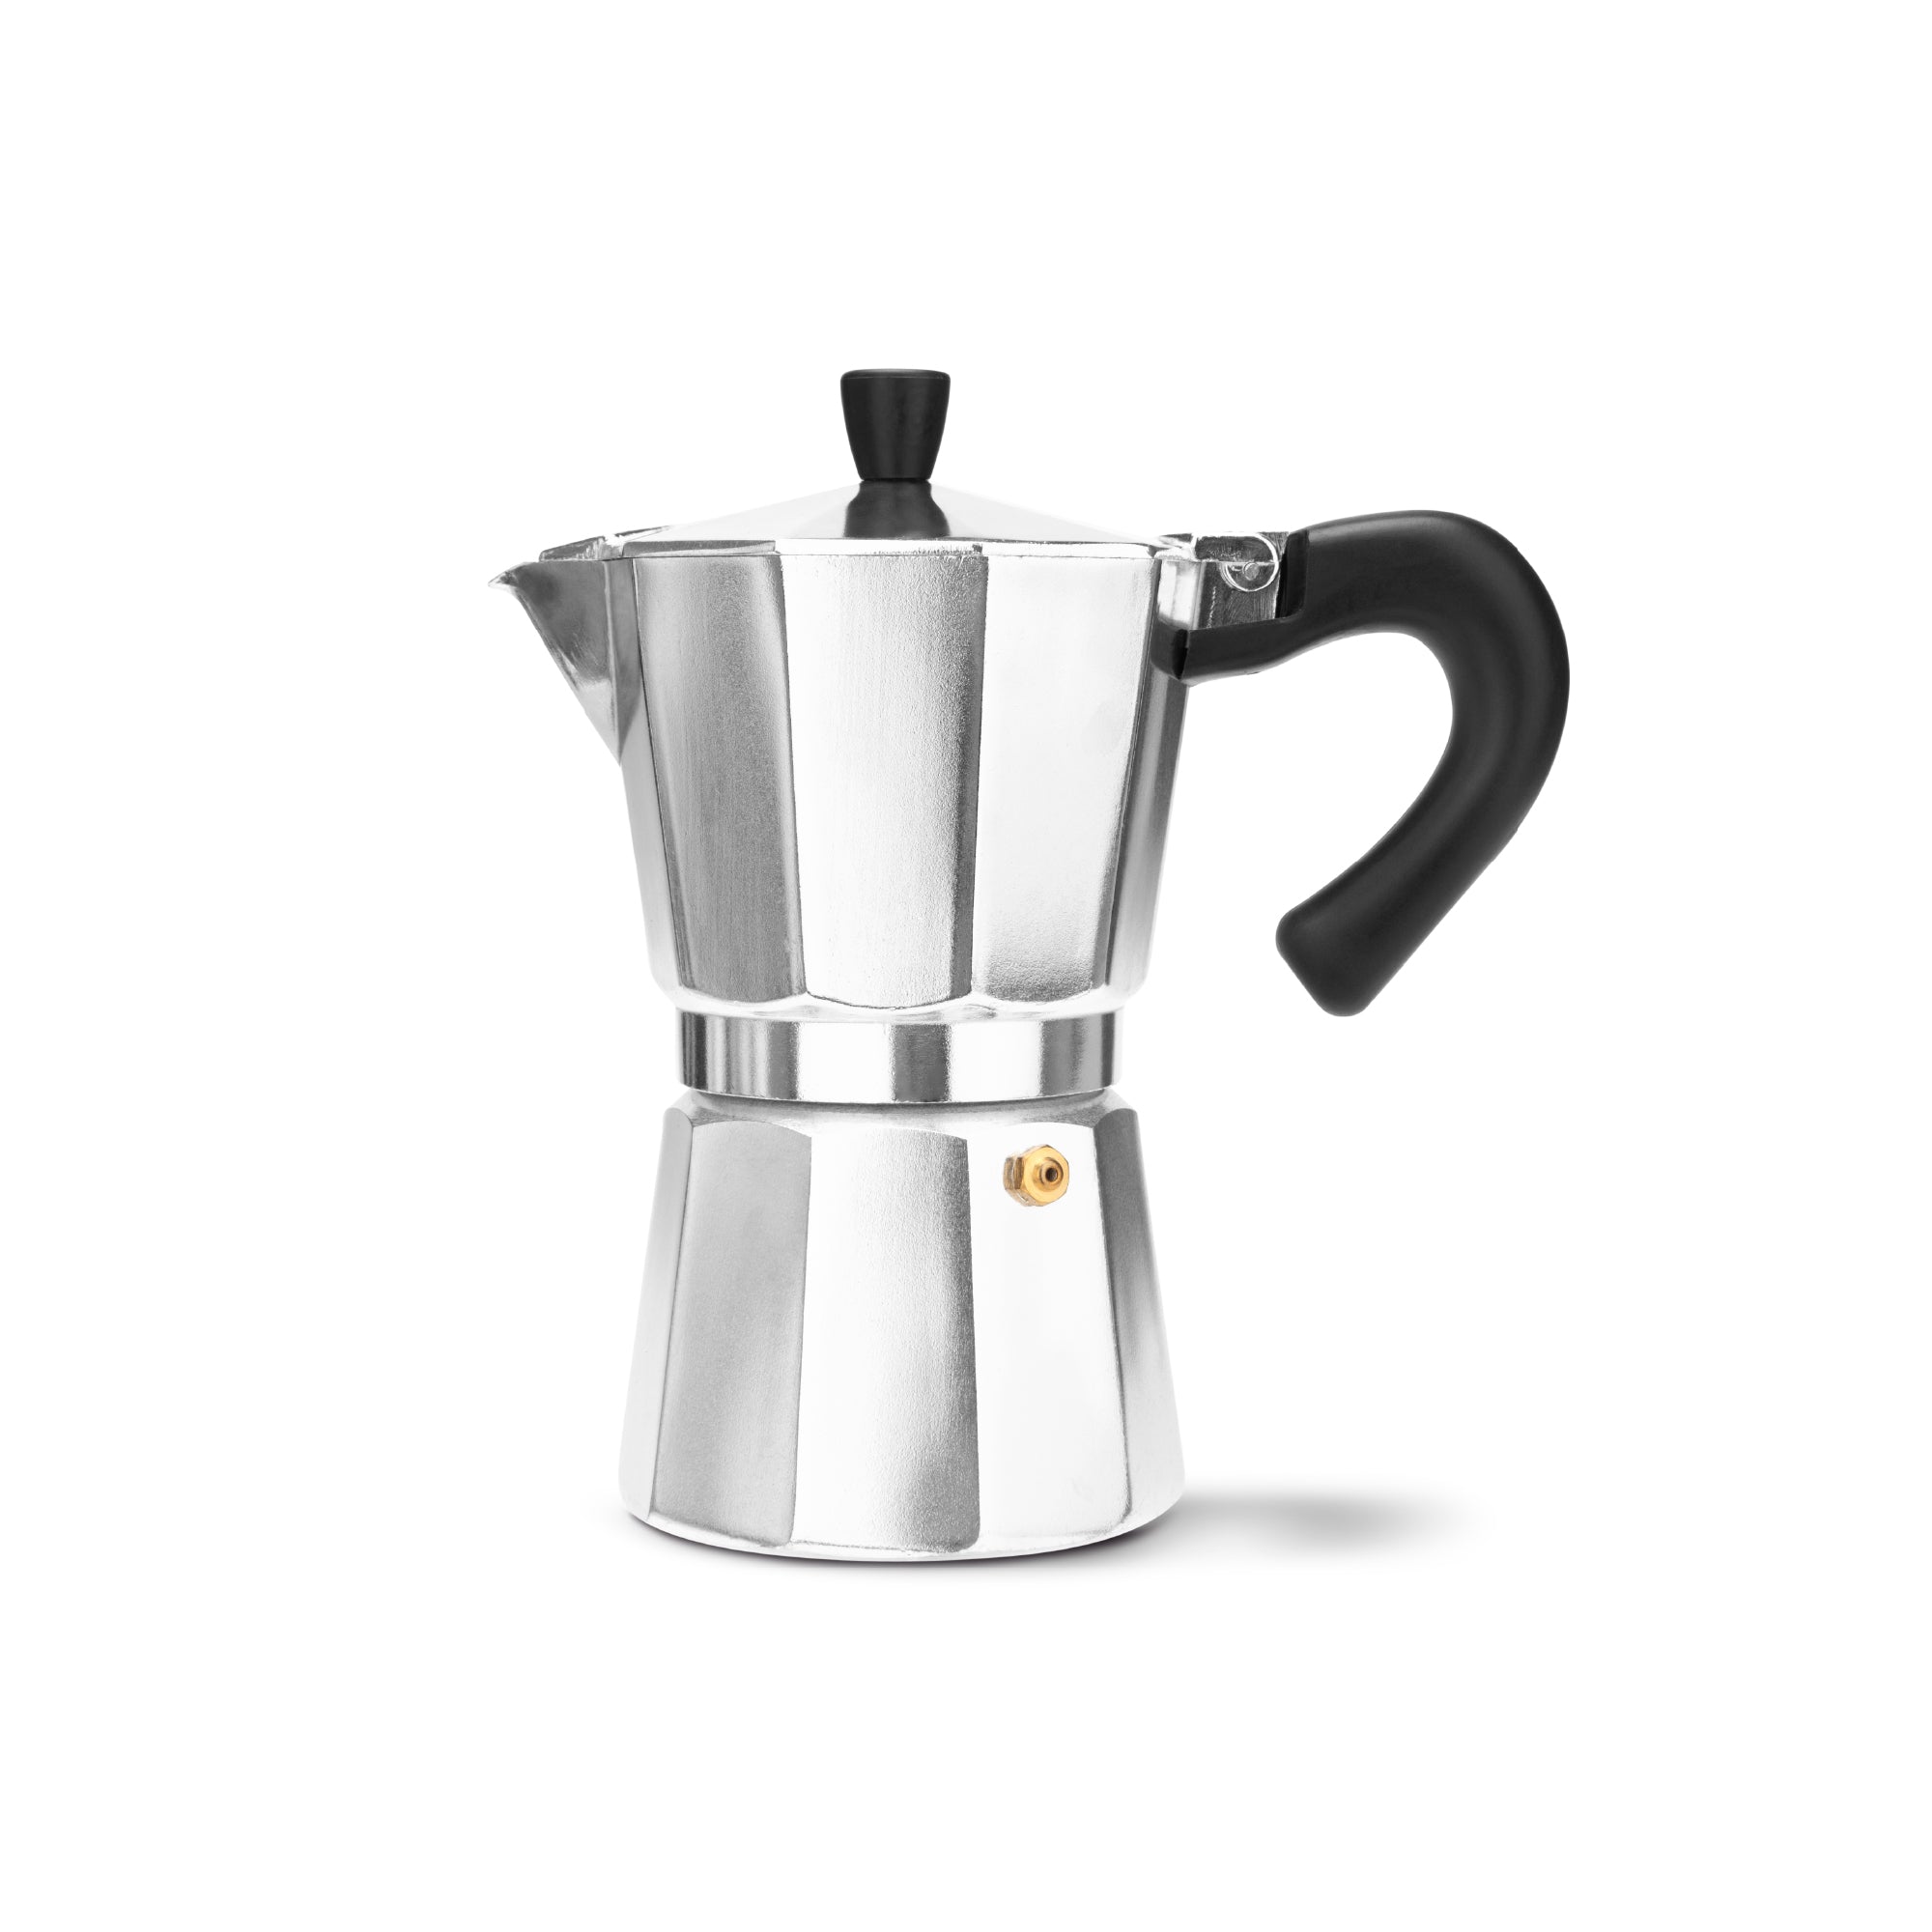 https://espresso-works.com/cdn/shop/products/espressoworks-six-cup-moka-pot-stovetop-espresso-maker_2000x.jpg?v=1604993336